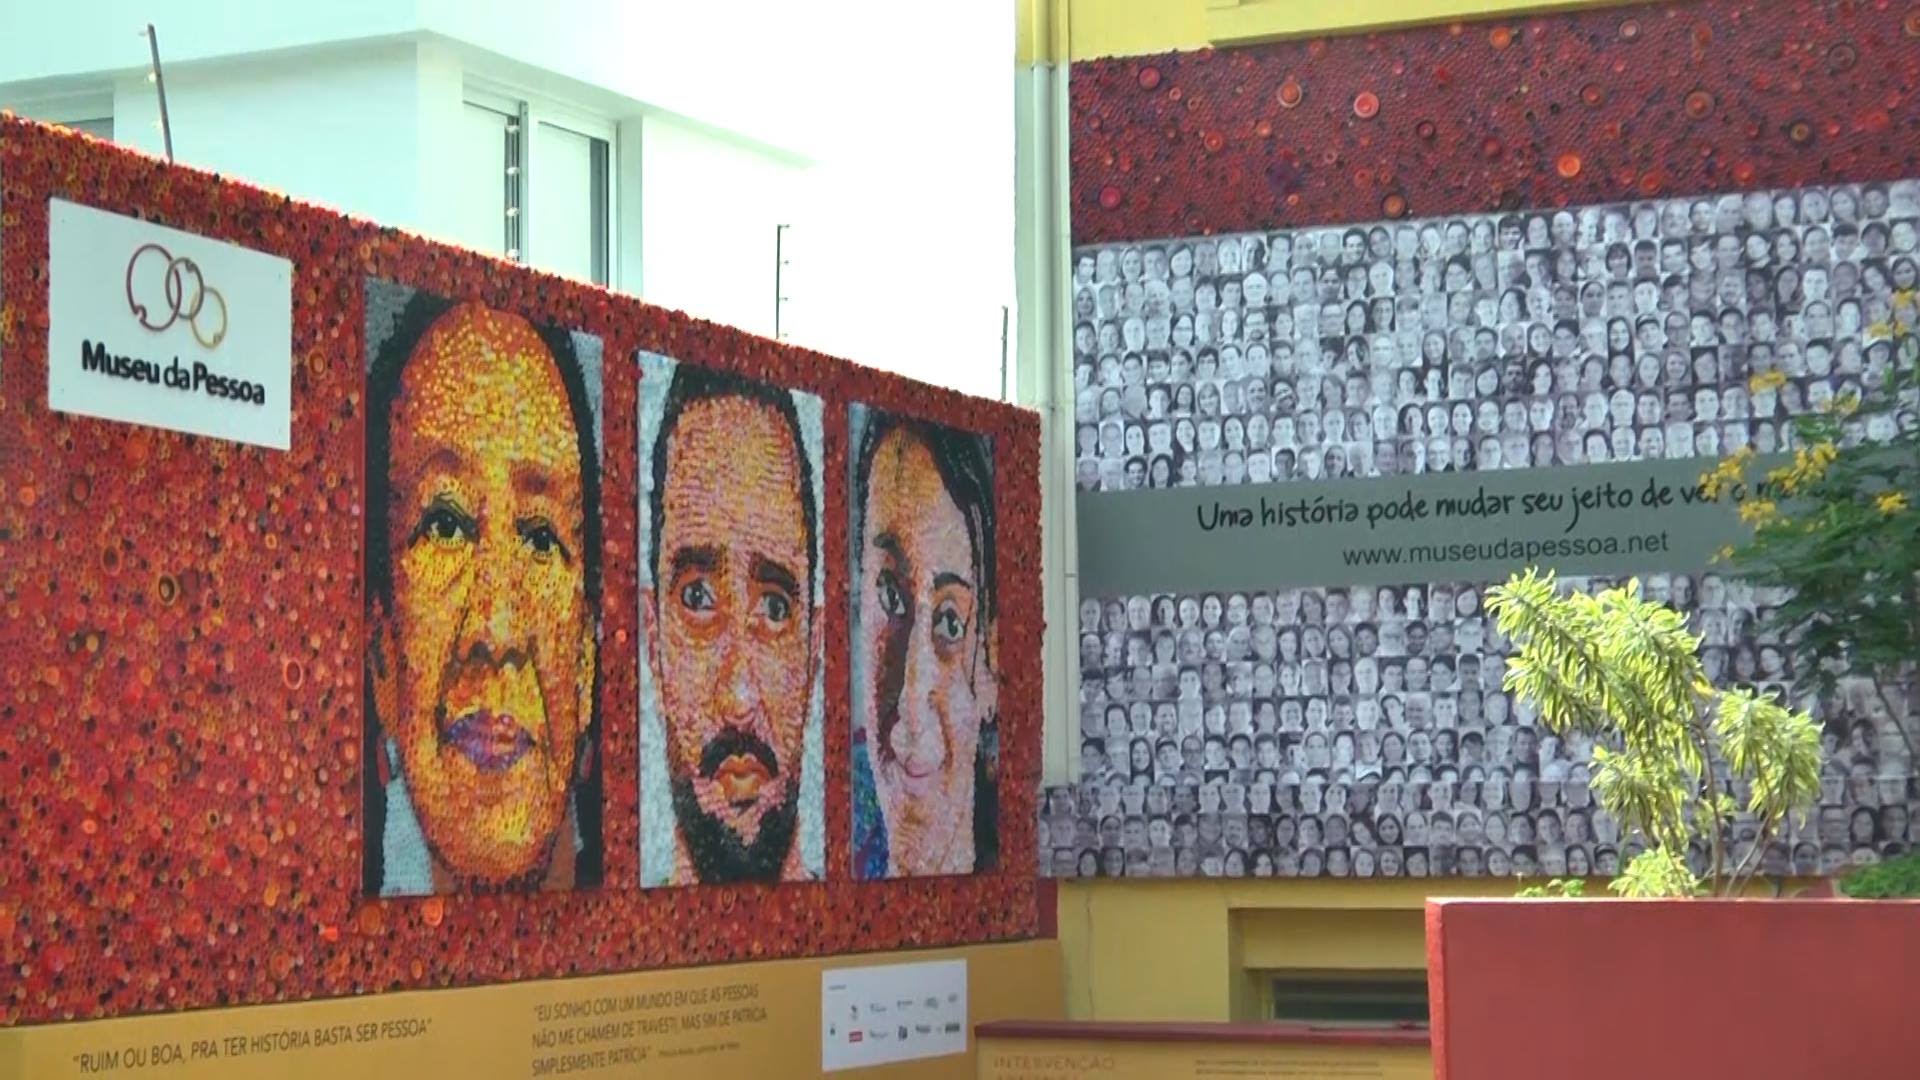 youtube - O Museu da Pessoa, de São Paulo para mundo!